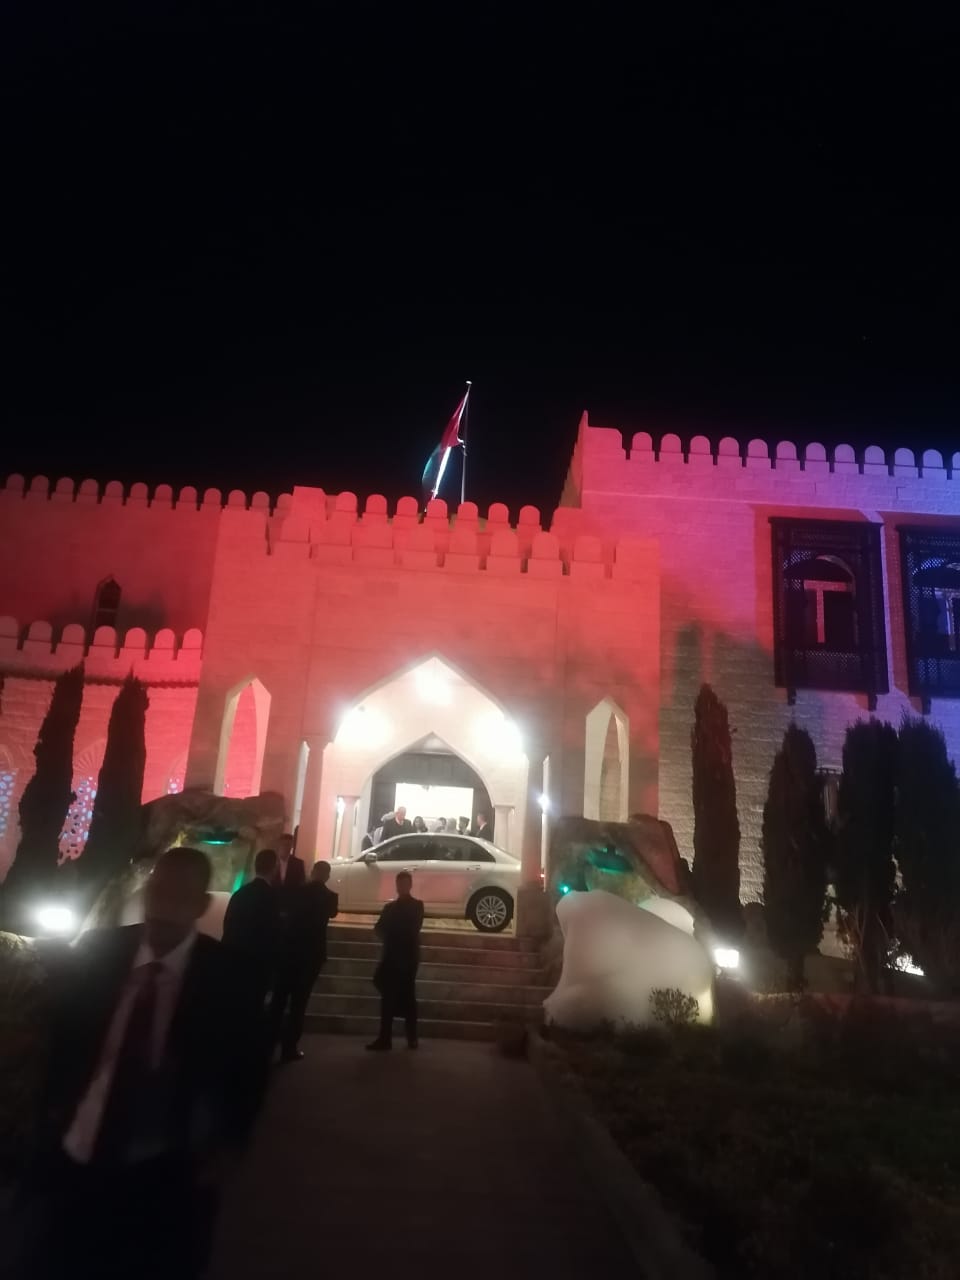  بالصور: سفارة سلطنة عمان بالأردن تحتفل بالعيد الوطني 